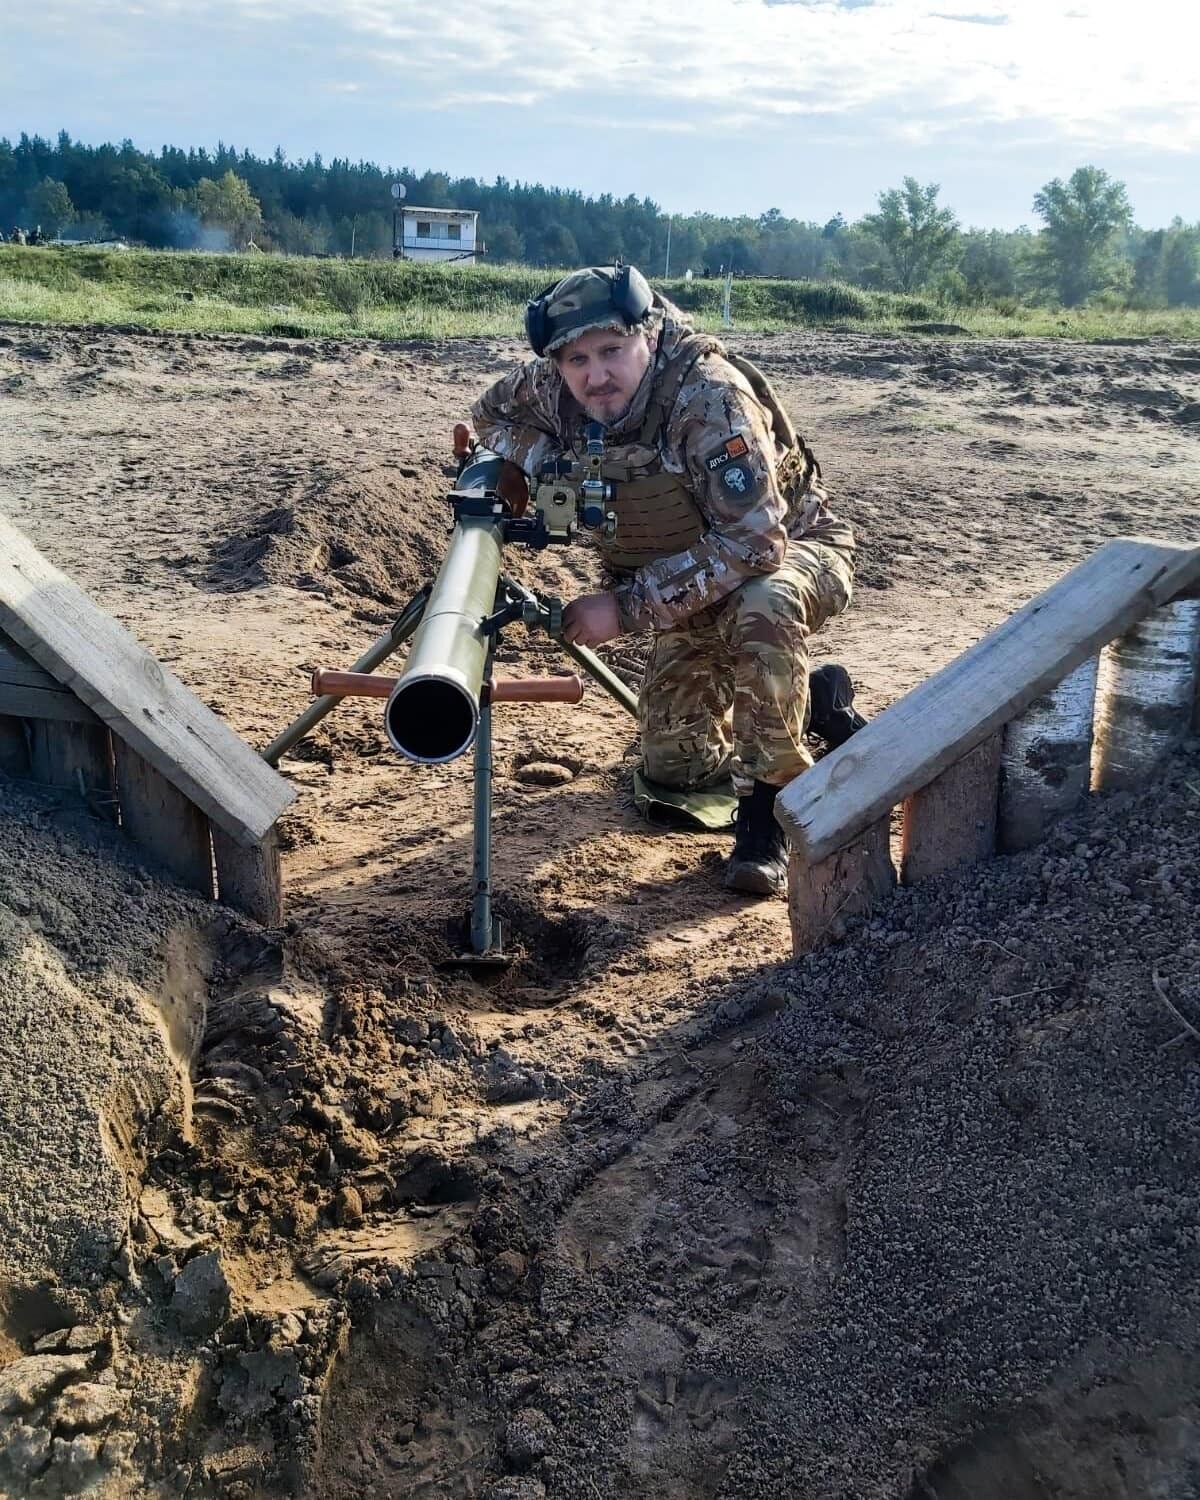 "На это страшно смотреть": пограничник "Немец" из Сил обороны рассказал об увиденном в Донецкой области